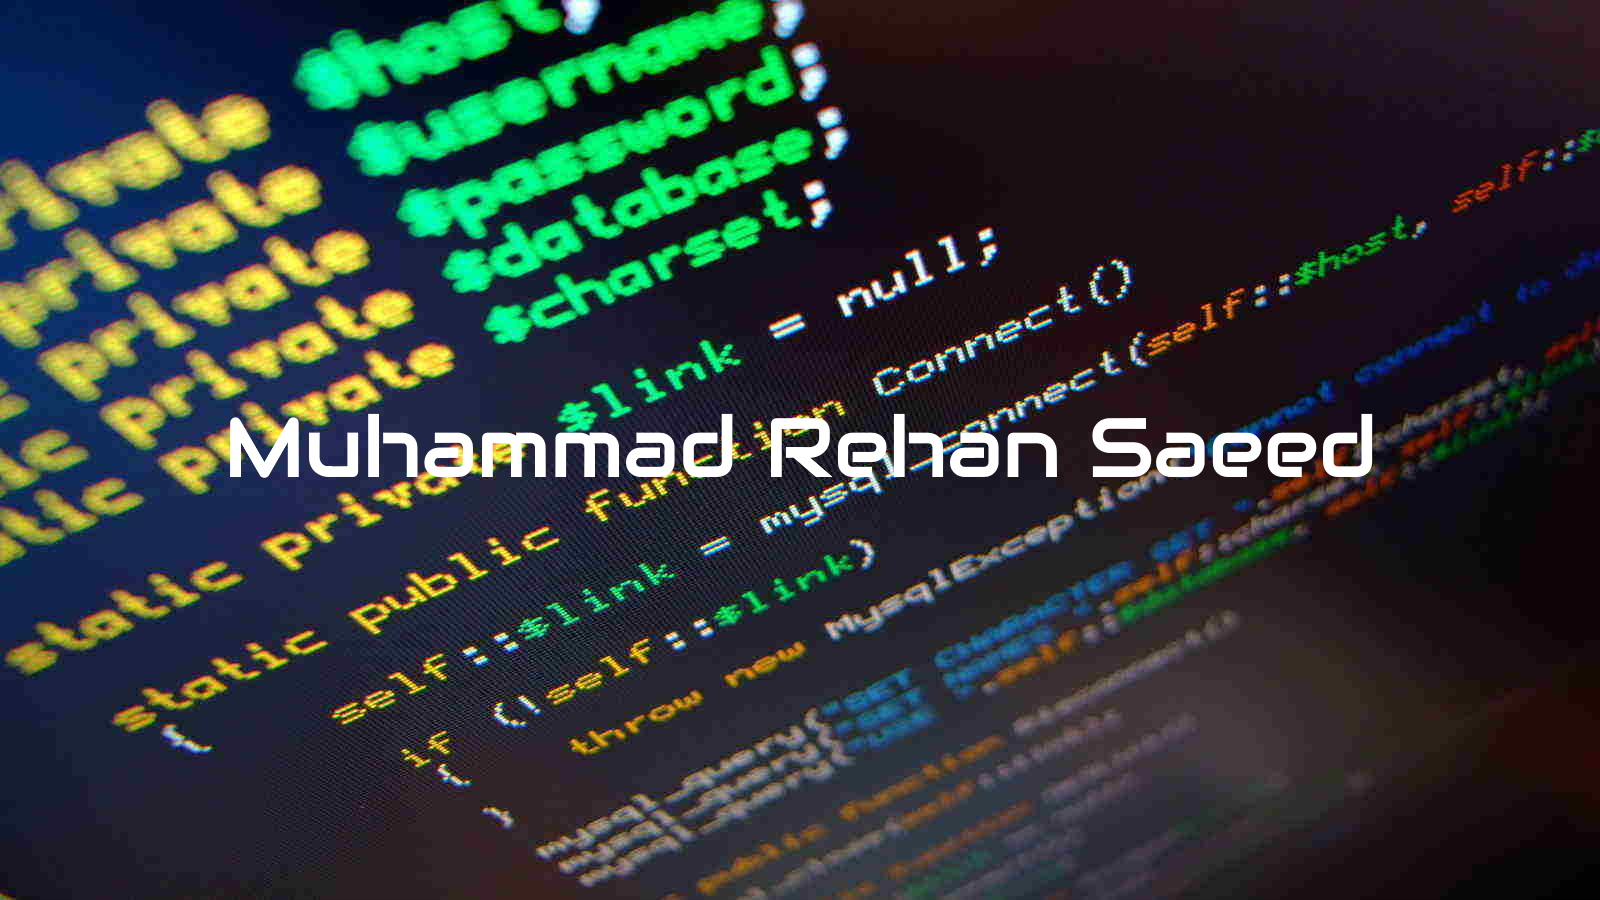 Muhammad-Rehan-Saeed-1600x900.jpg